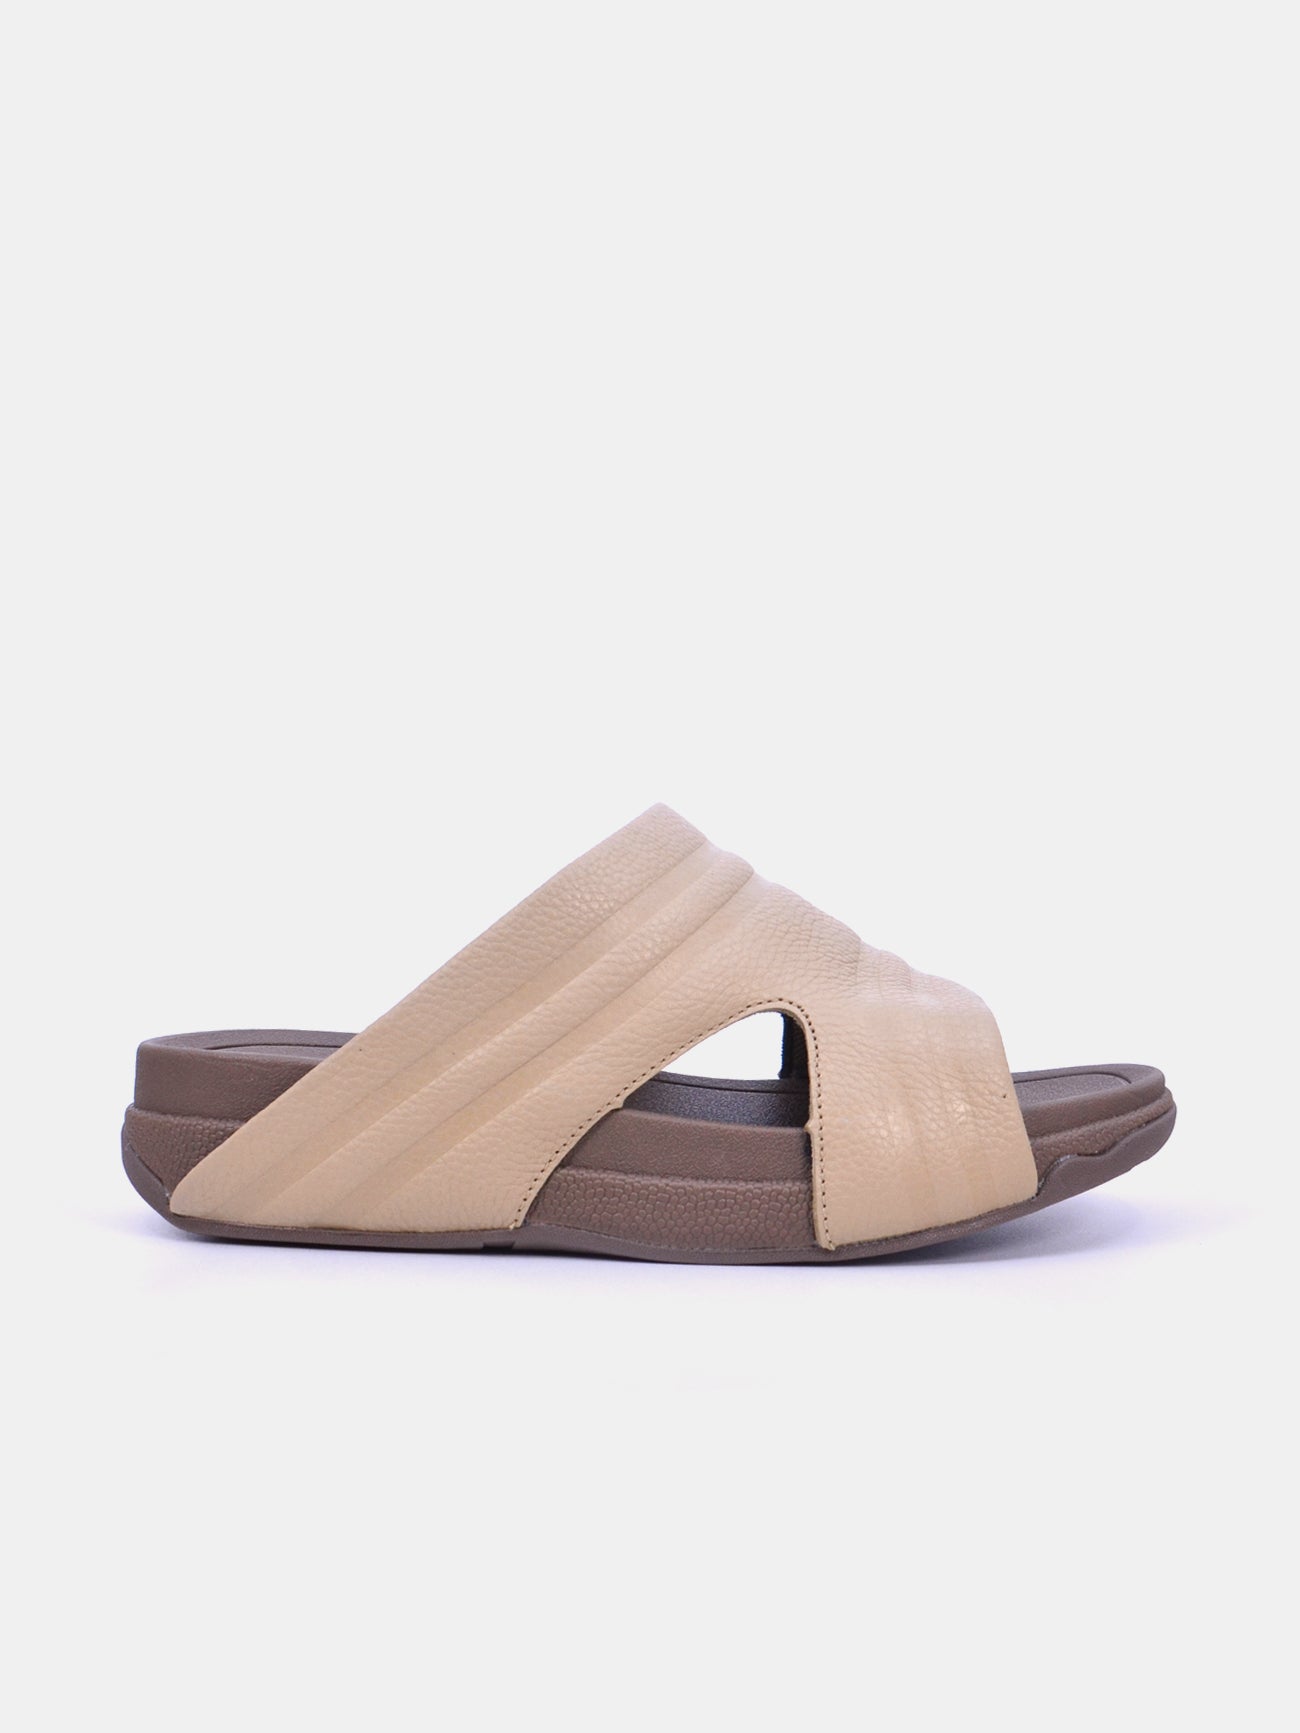 Barjeel Uno 20254 Men's Arabic Sandals #color_Beige